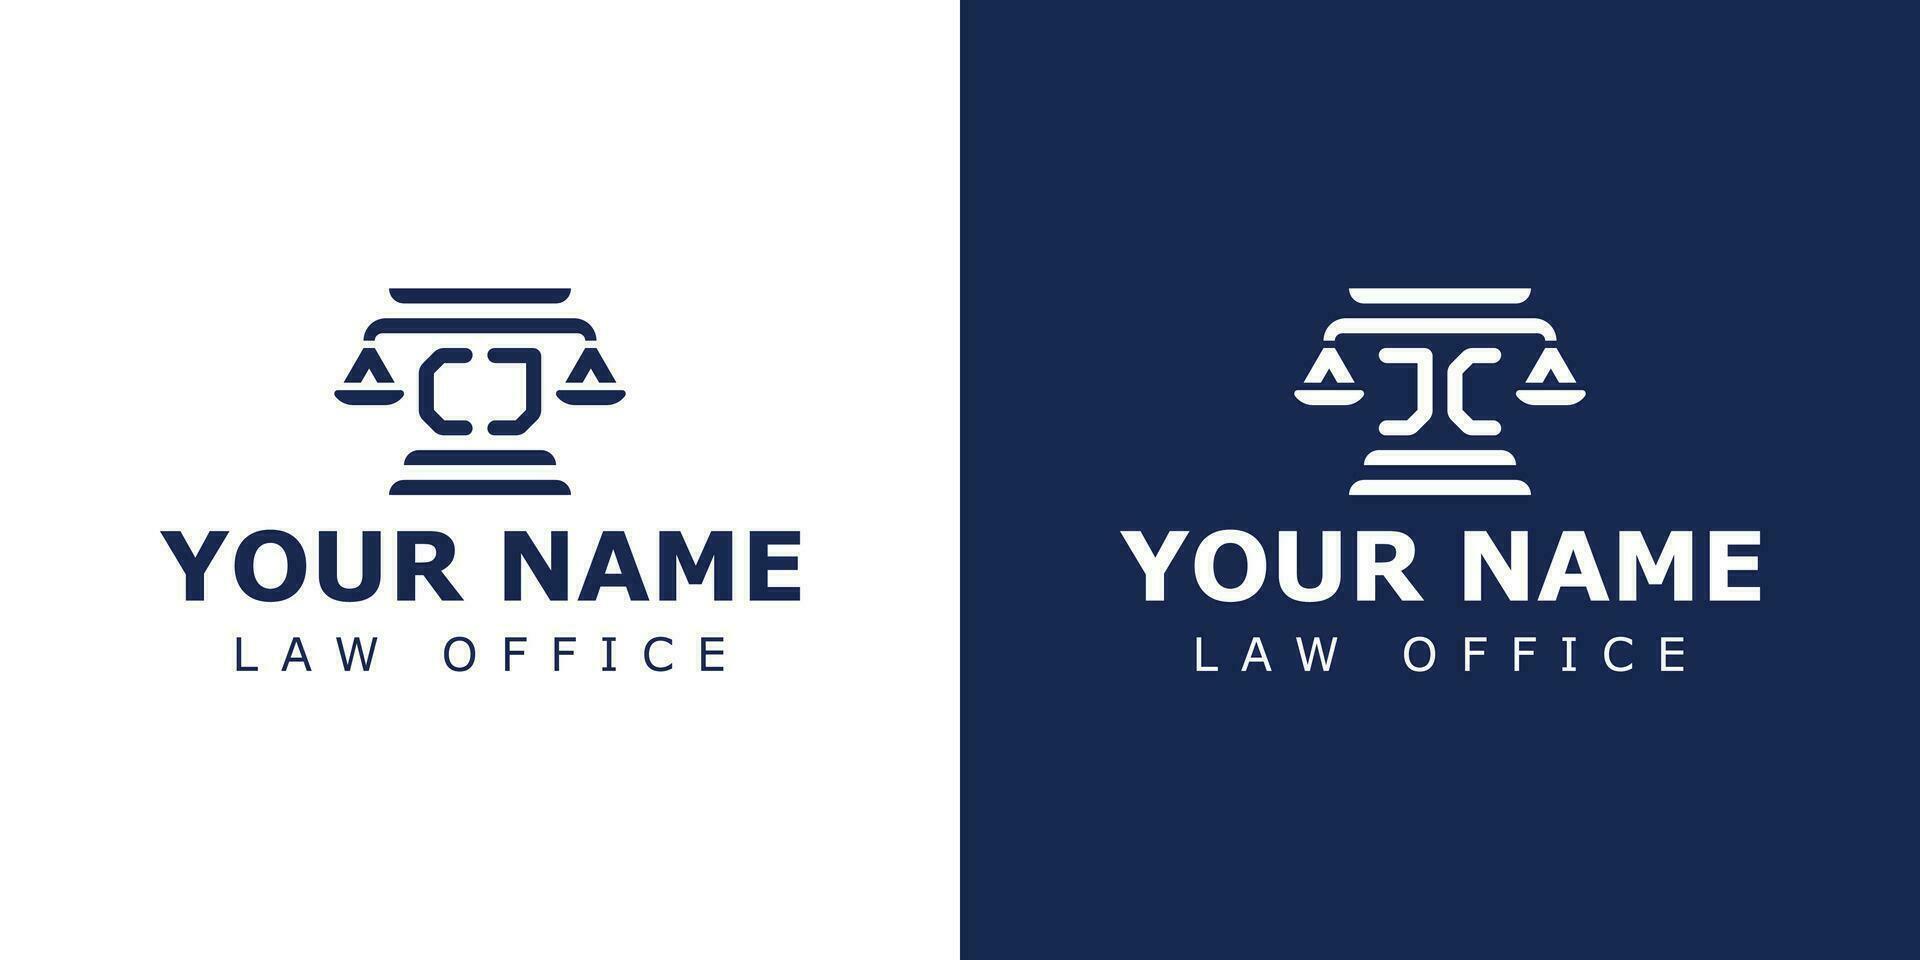 lettre cj et jc légal logo, adapté pour avocat, juridique, ou Justice avec cj ou jc initiales vecteur